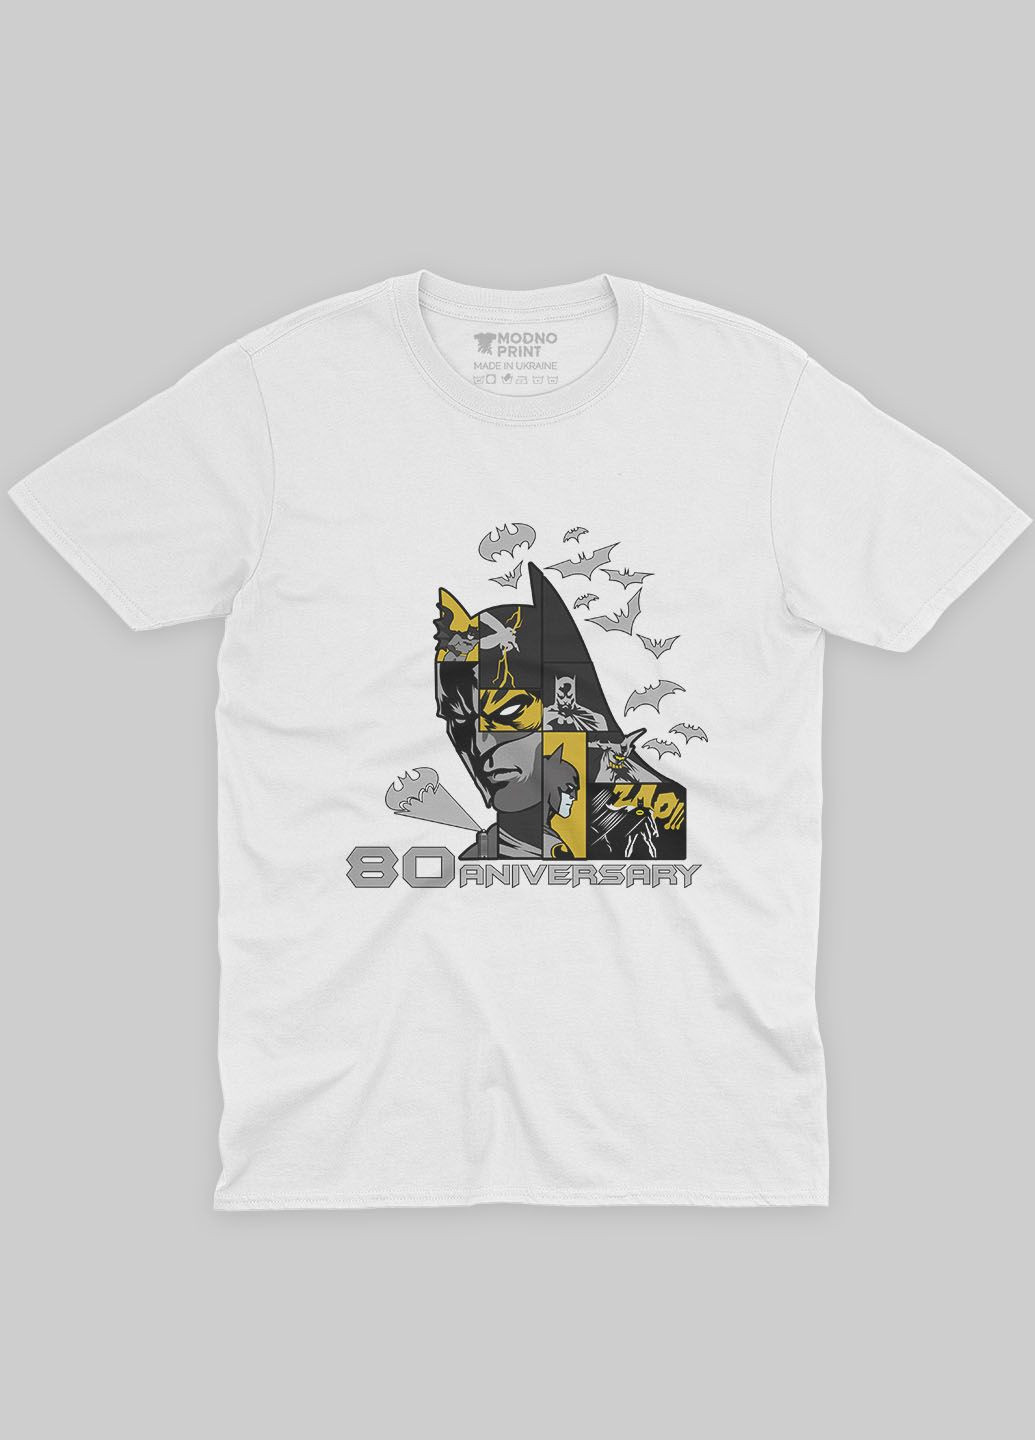 Біла демісезонна футболка для хлопчика з принтом супергероя - бетмен (ts001-1-whi-006-003-035-b) Modno